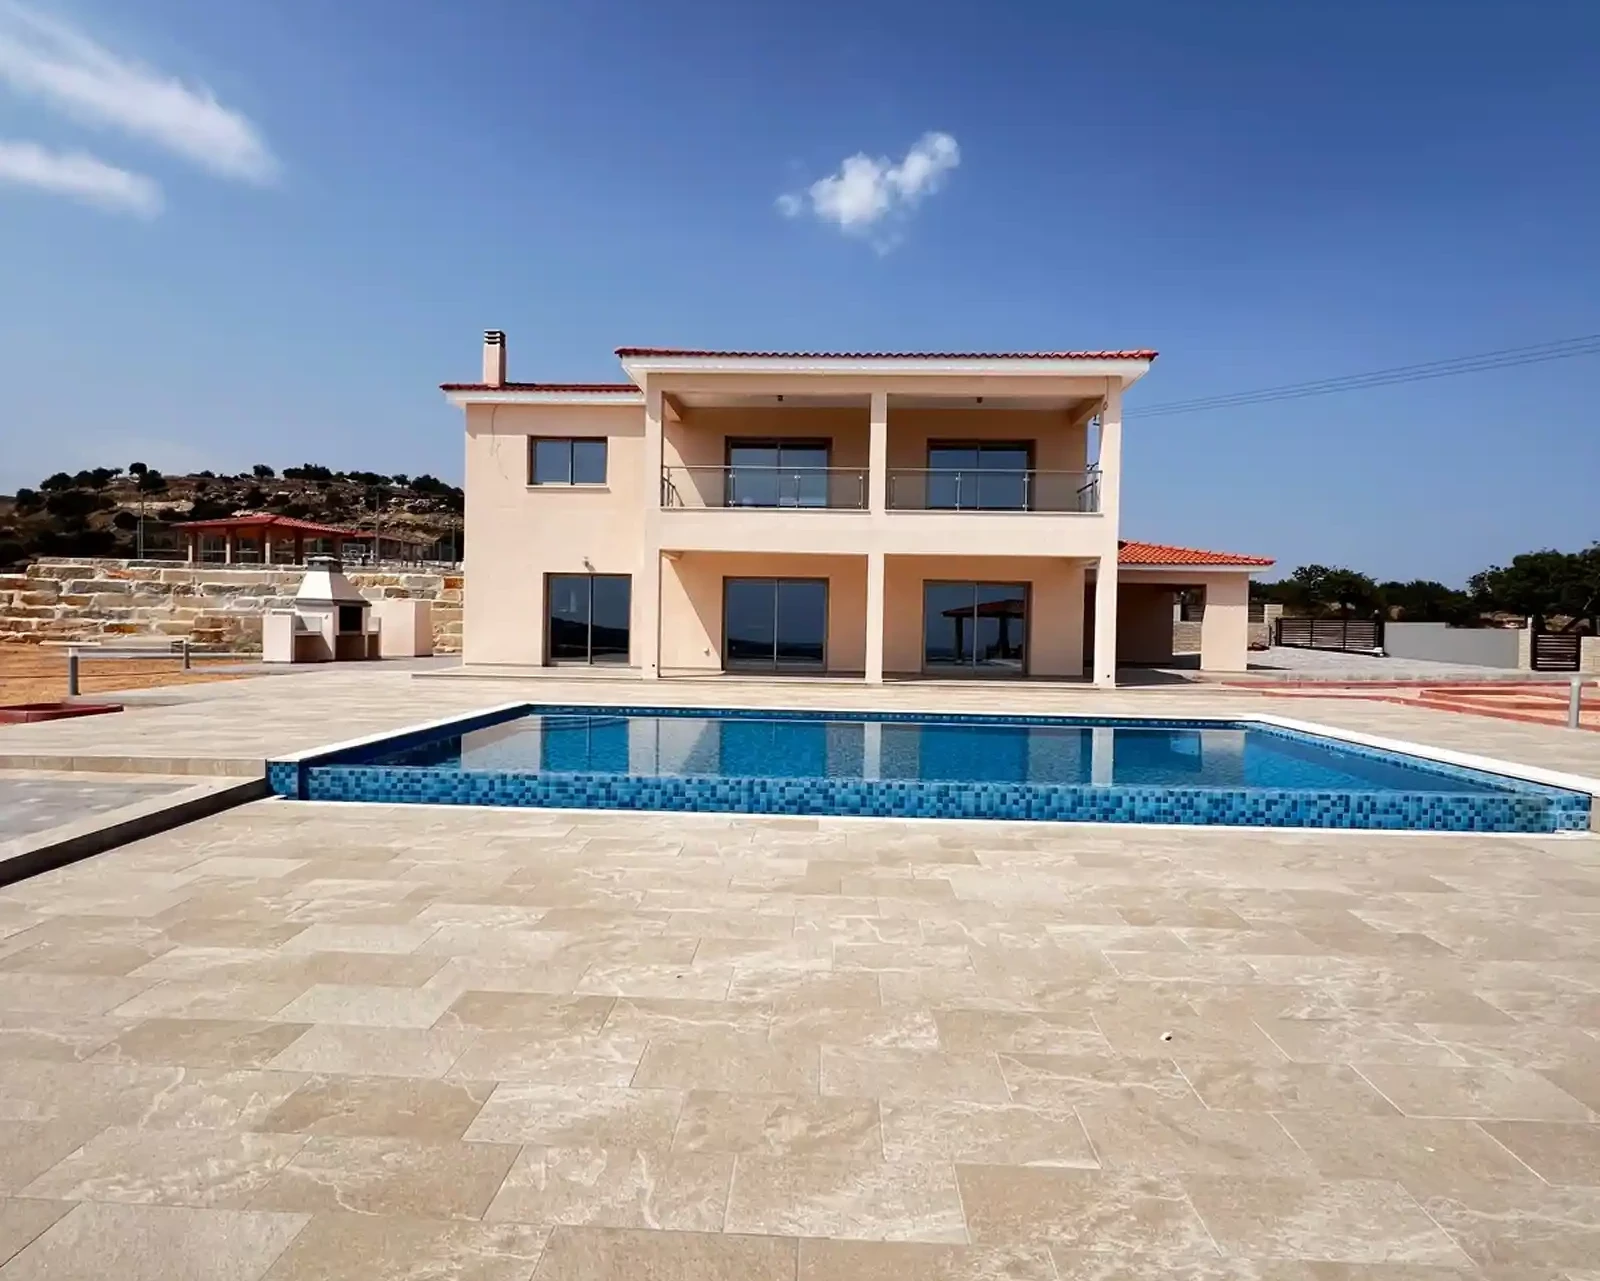 3-bedroom villa to rent €5.000, image 1